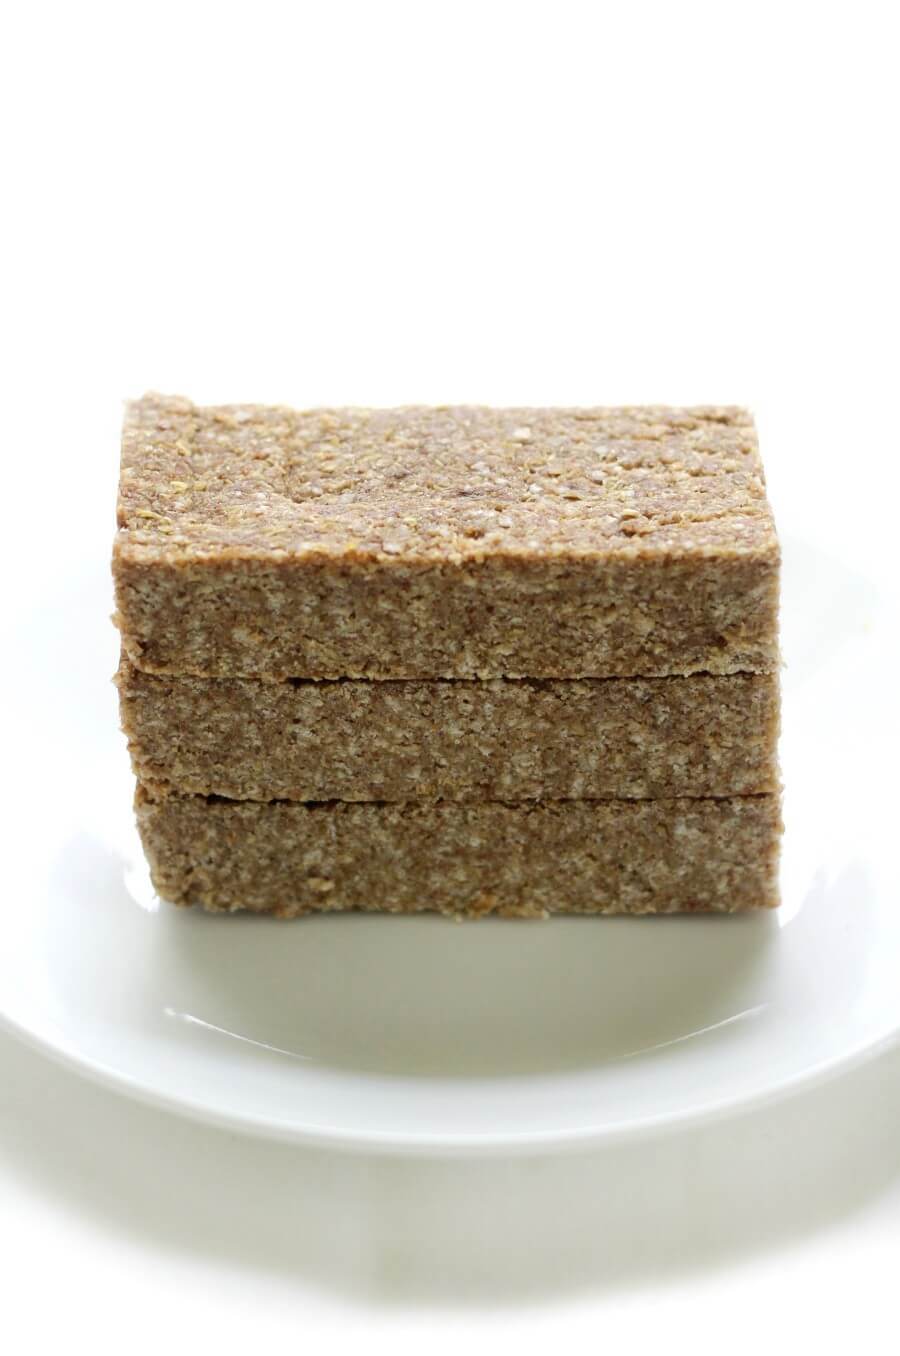 3 stacked no-bake granola bars